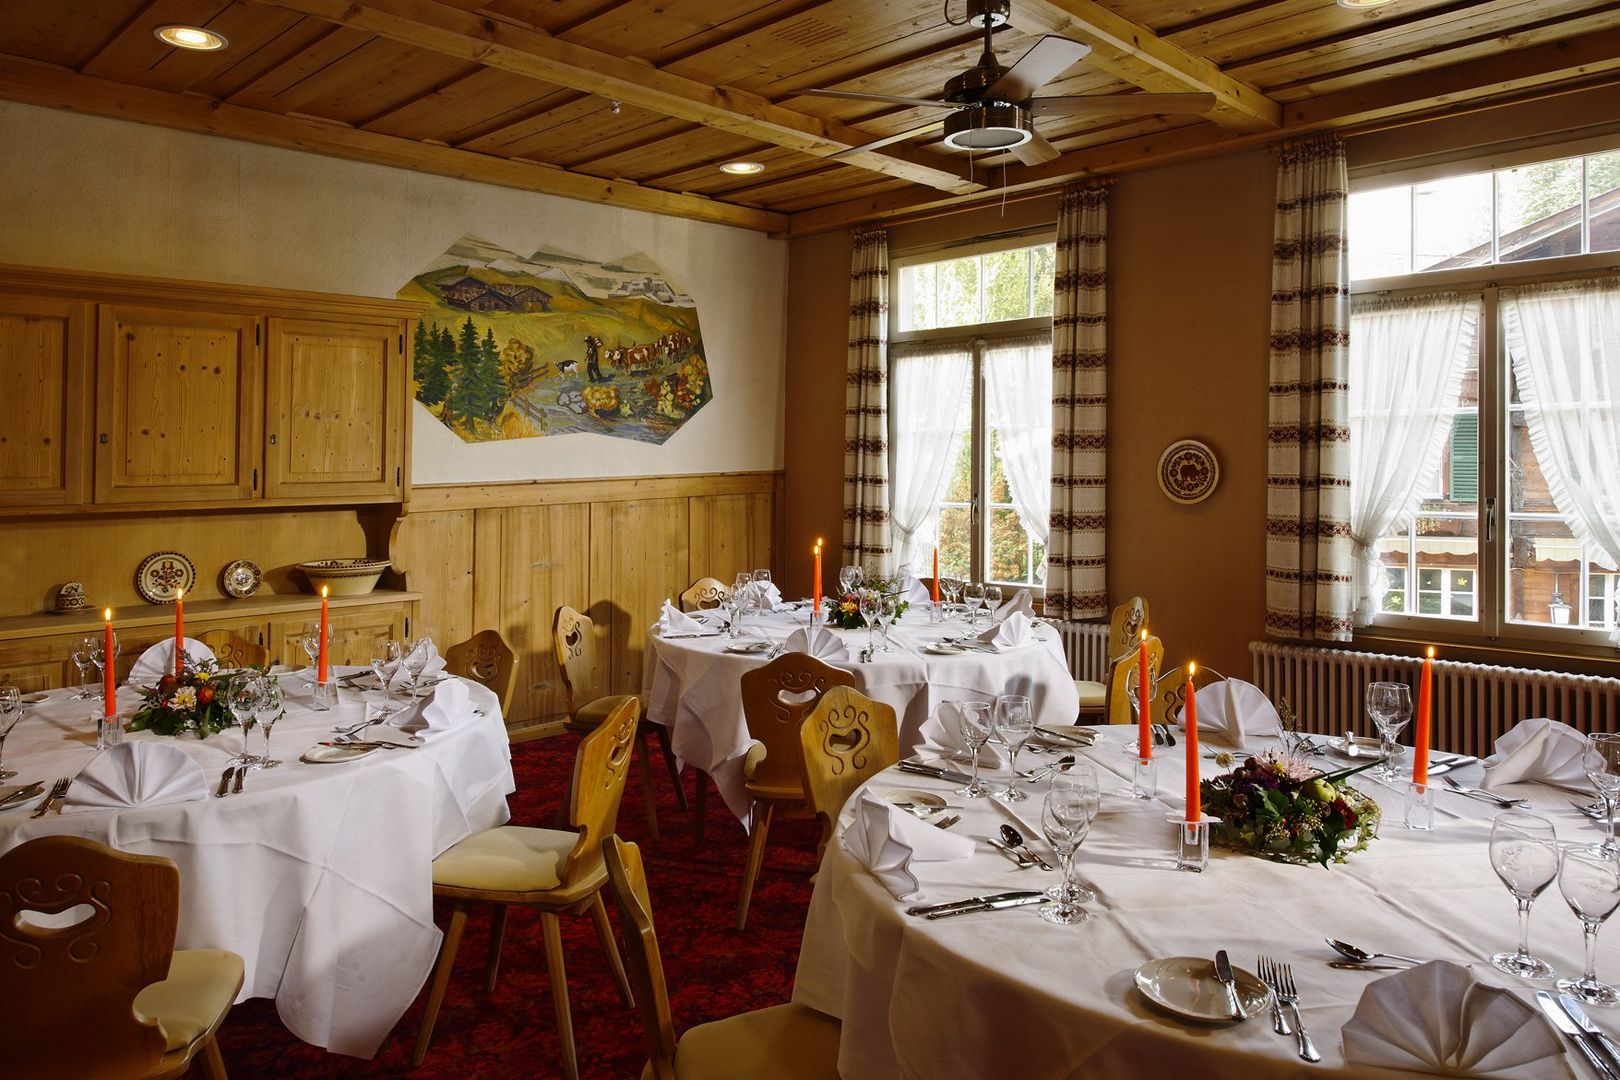 Beste aanbieding skivakantie Jungfrau Regio ❄ Hotel Bären (Winter Special) 7 Dagen  €909,-